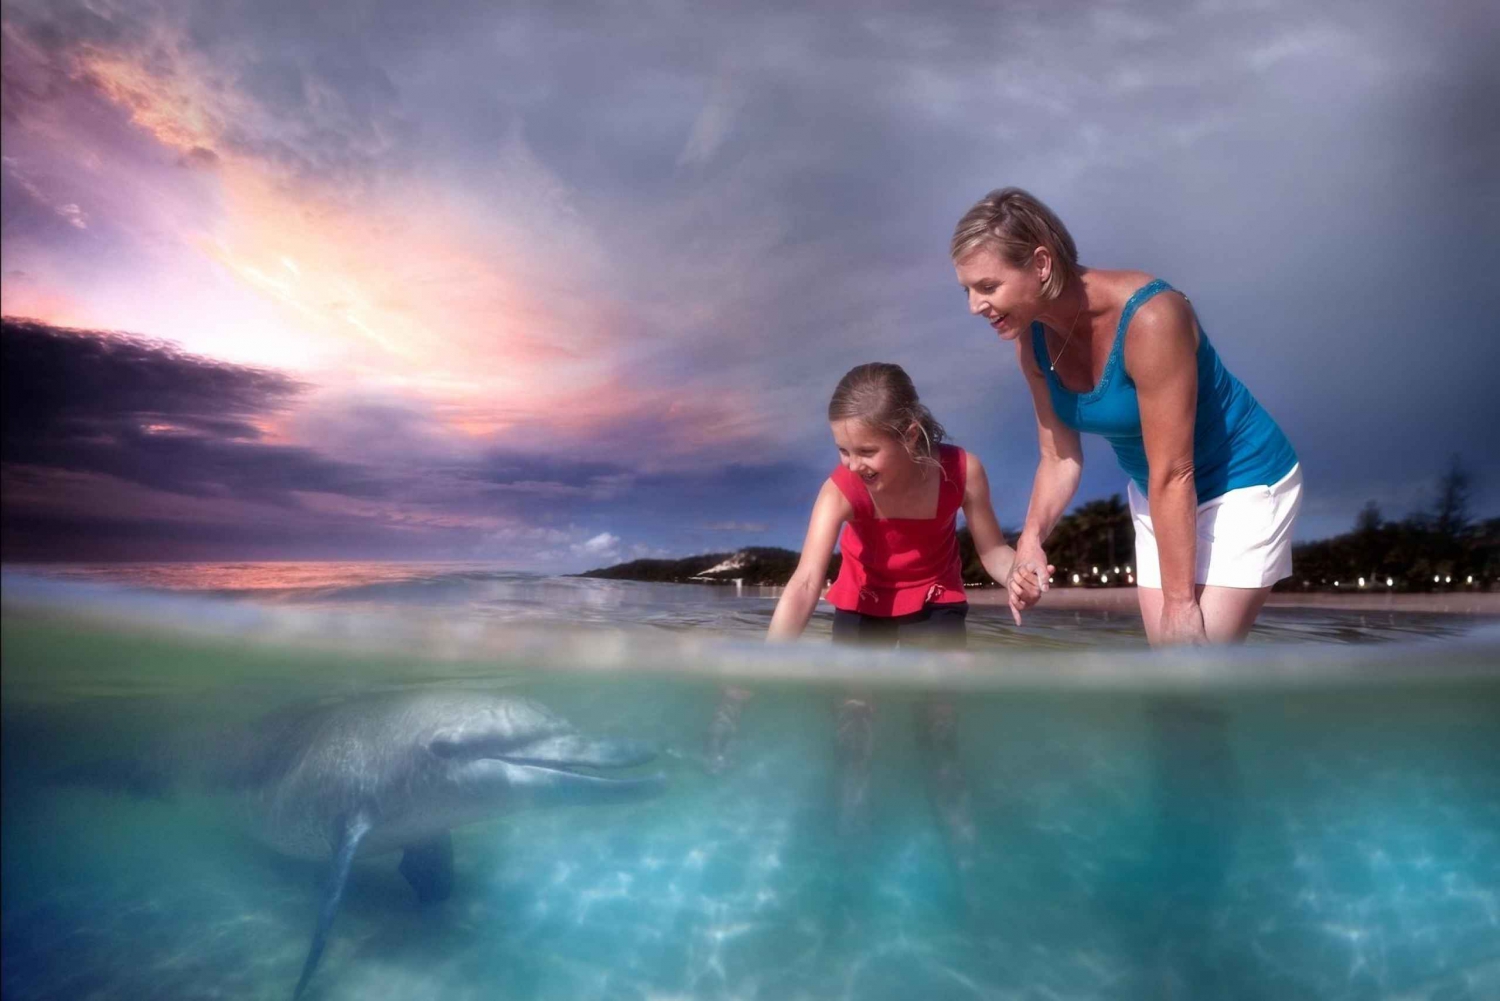 Wyspa Moreton: Rejs odkrywczy i karmienie delfinów